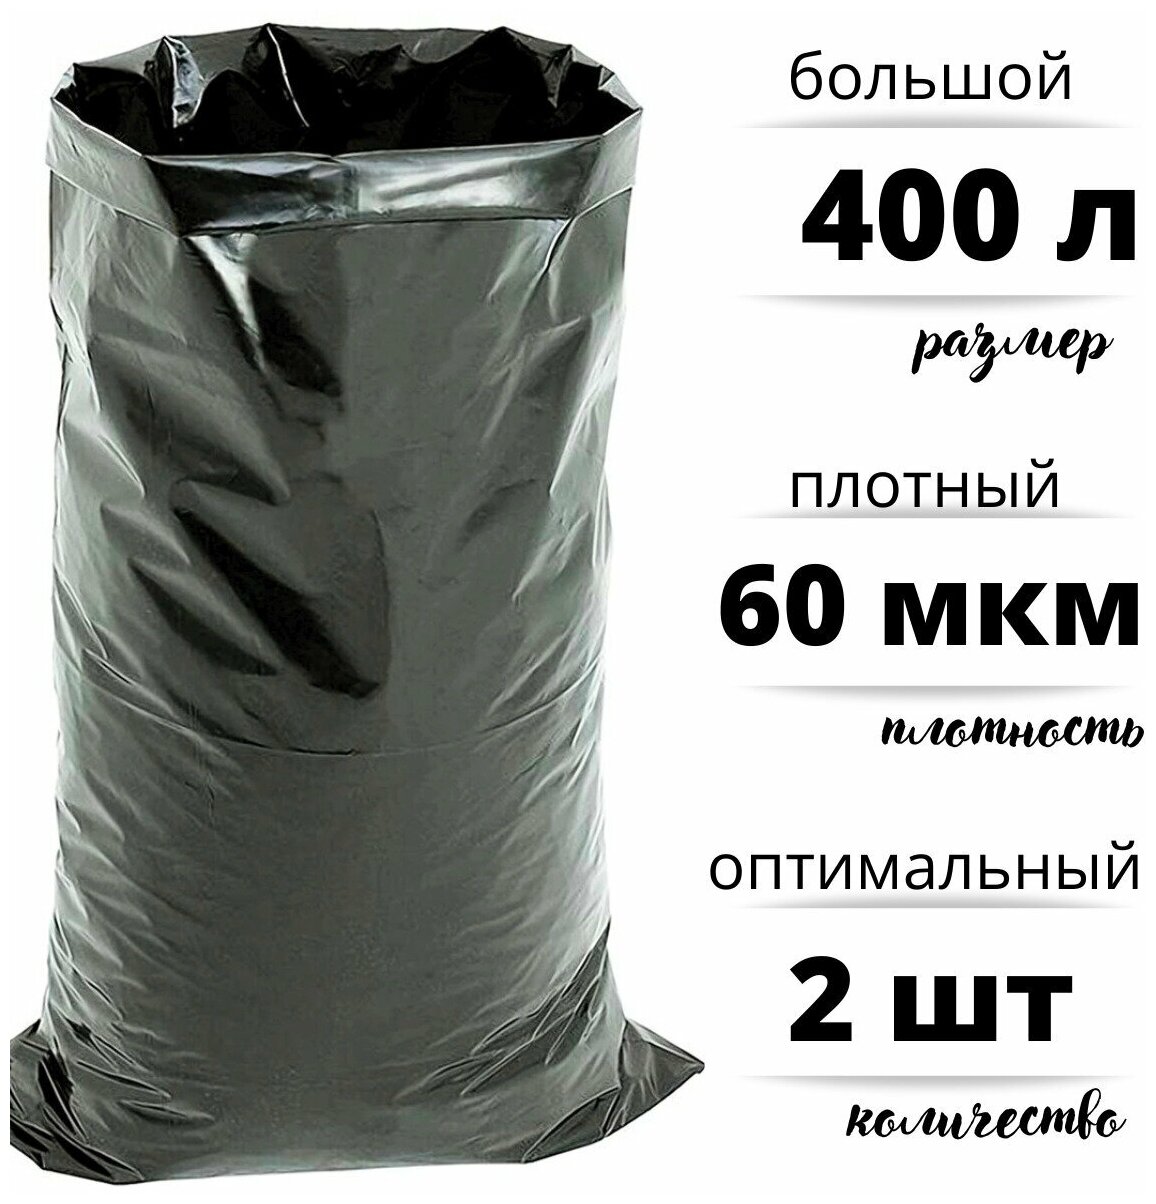 Мешки для строительного и бытового мусора полиэтиленовые 400 л особо плотные ПВД 60 мкм 2 штуки